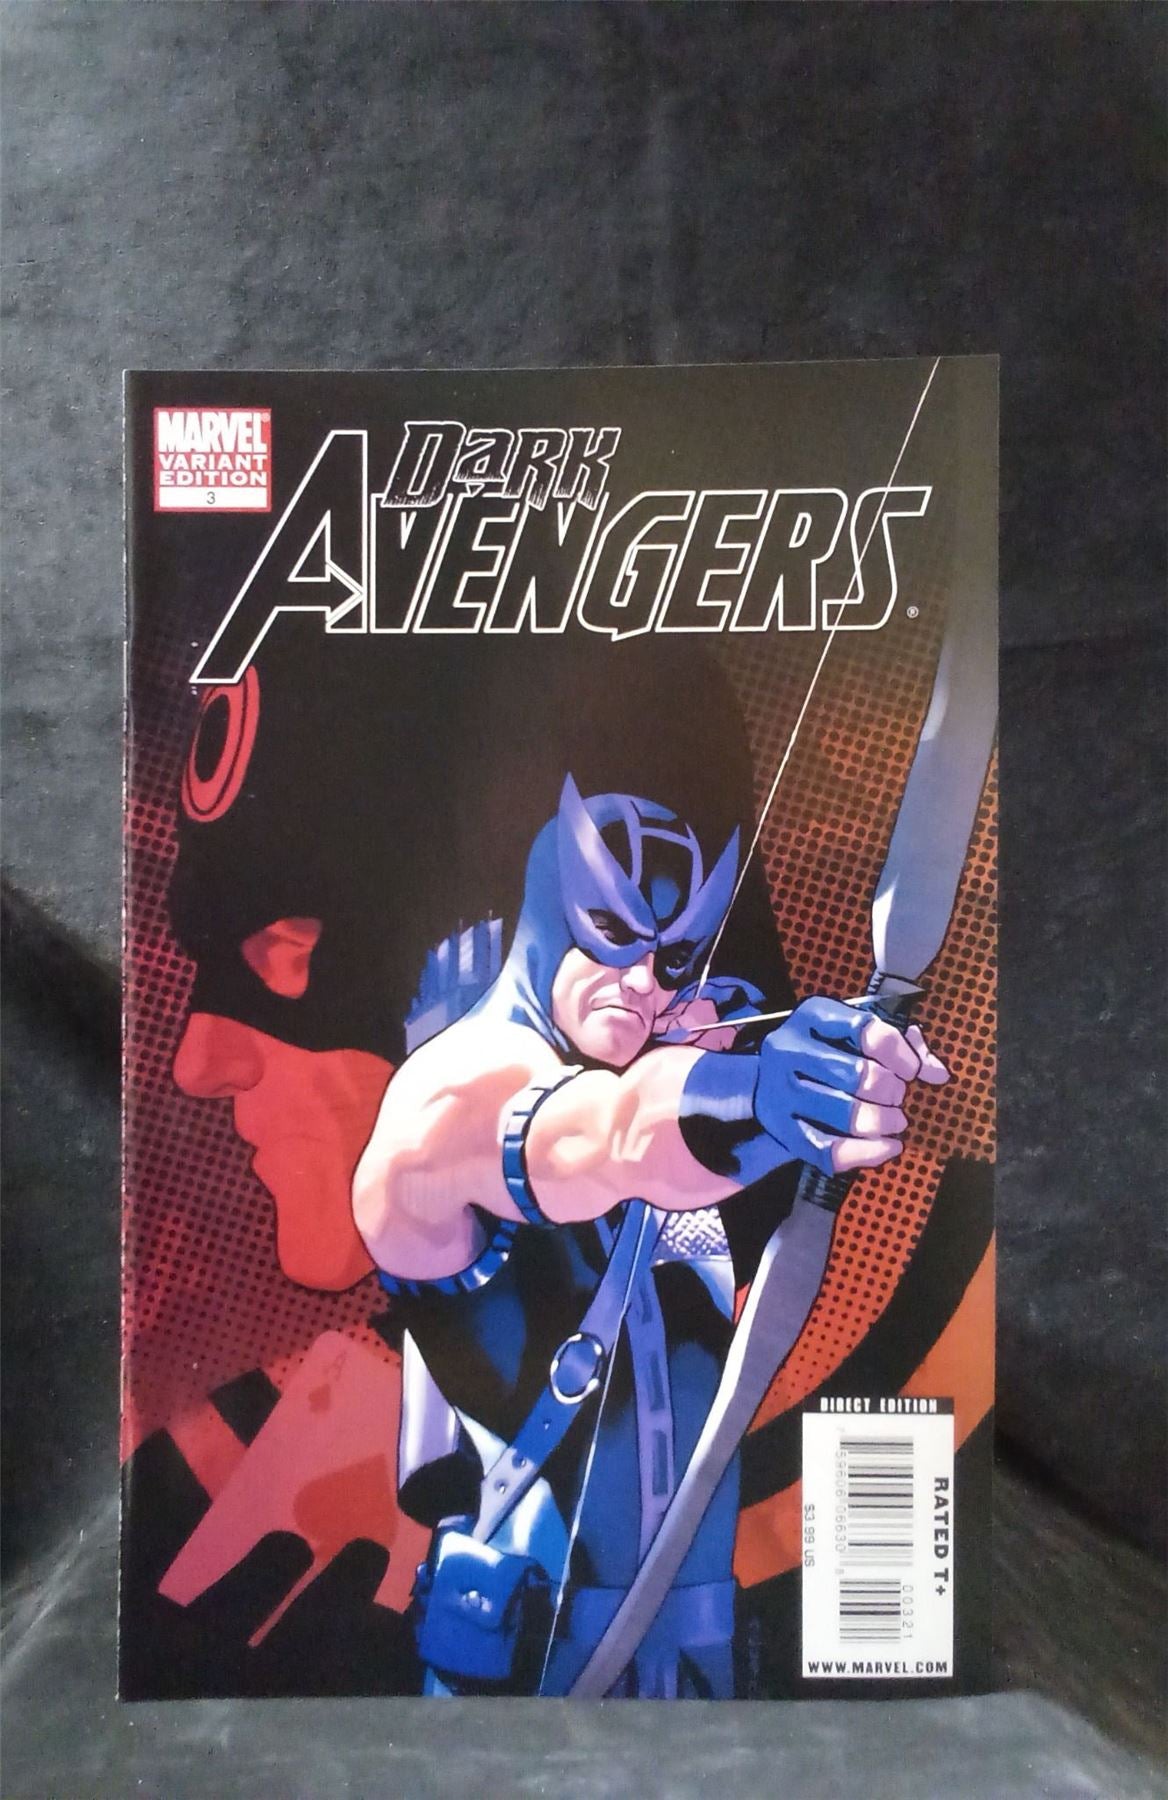 Dark Avengers #3 Variant Cover 2009 Marvel Comics Comic Book